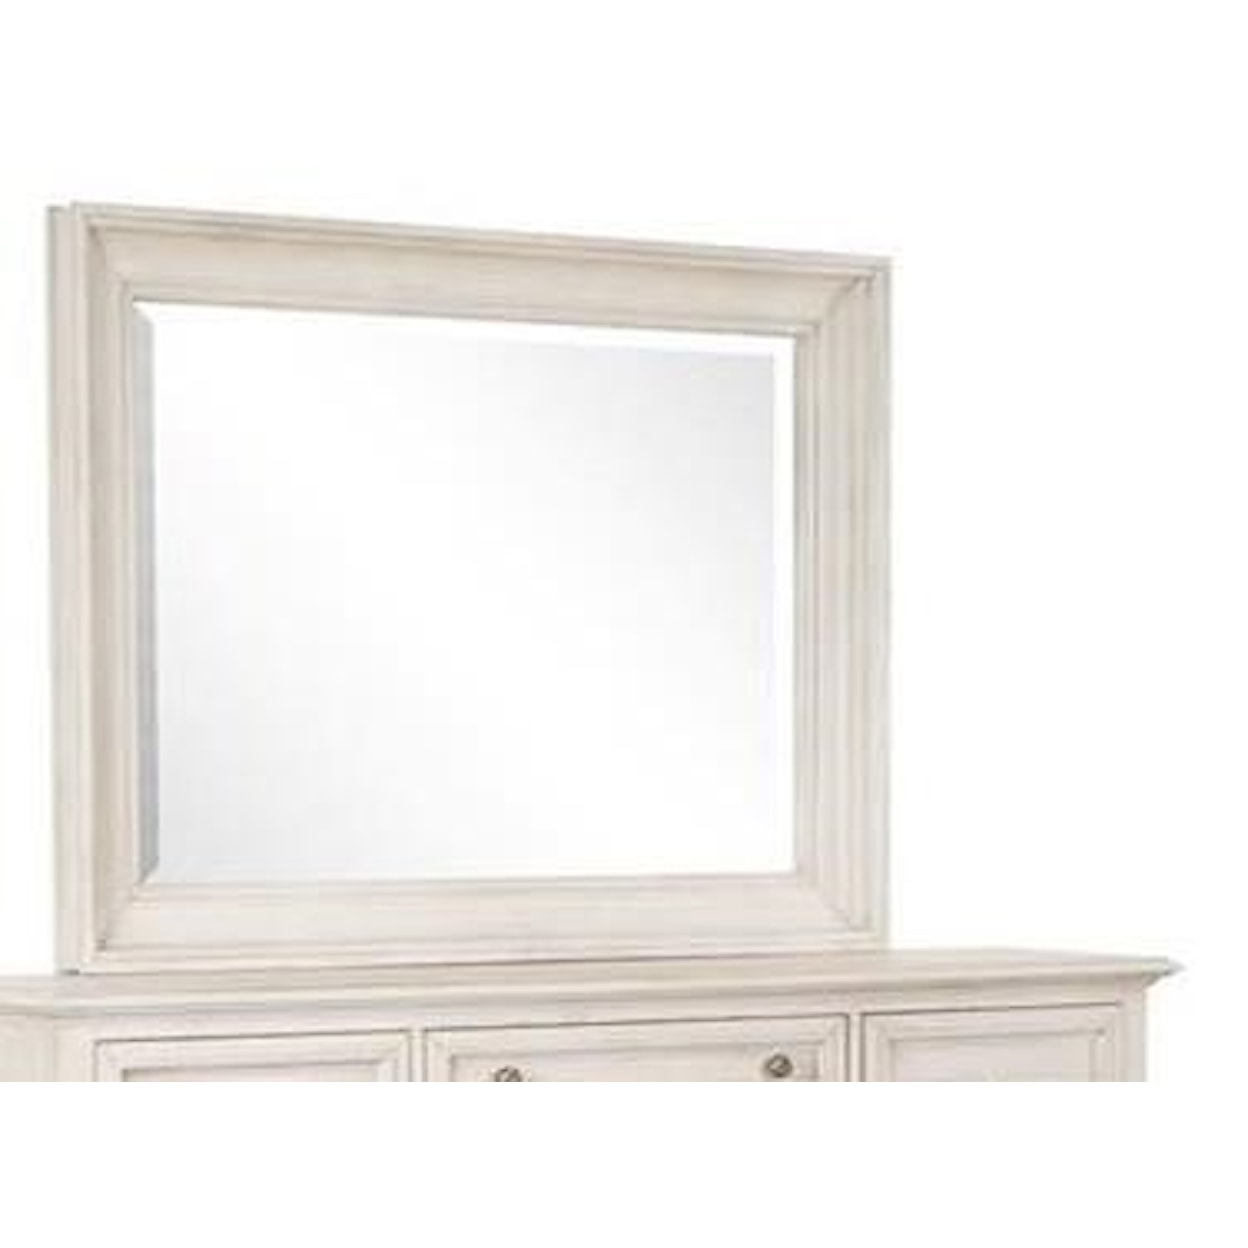 Magnussen Home Newport Bedroom Landscape Dresser Mirror